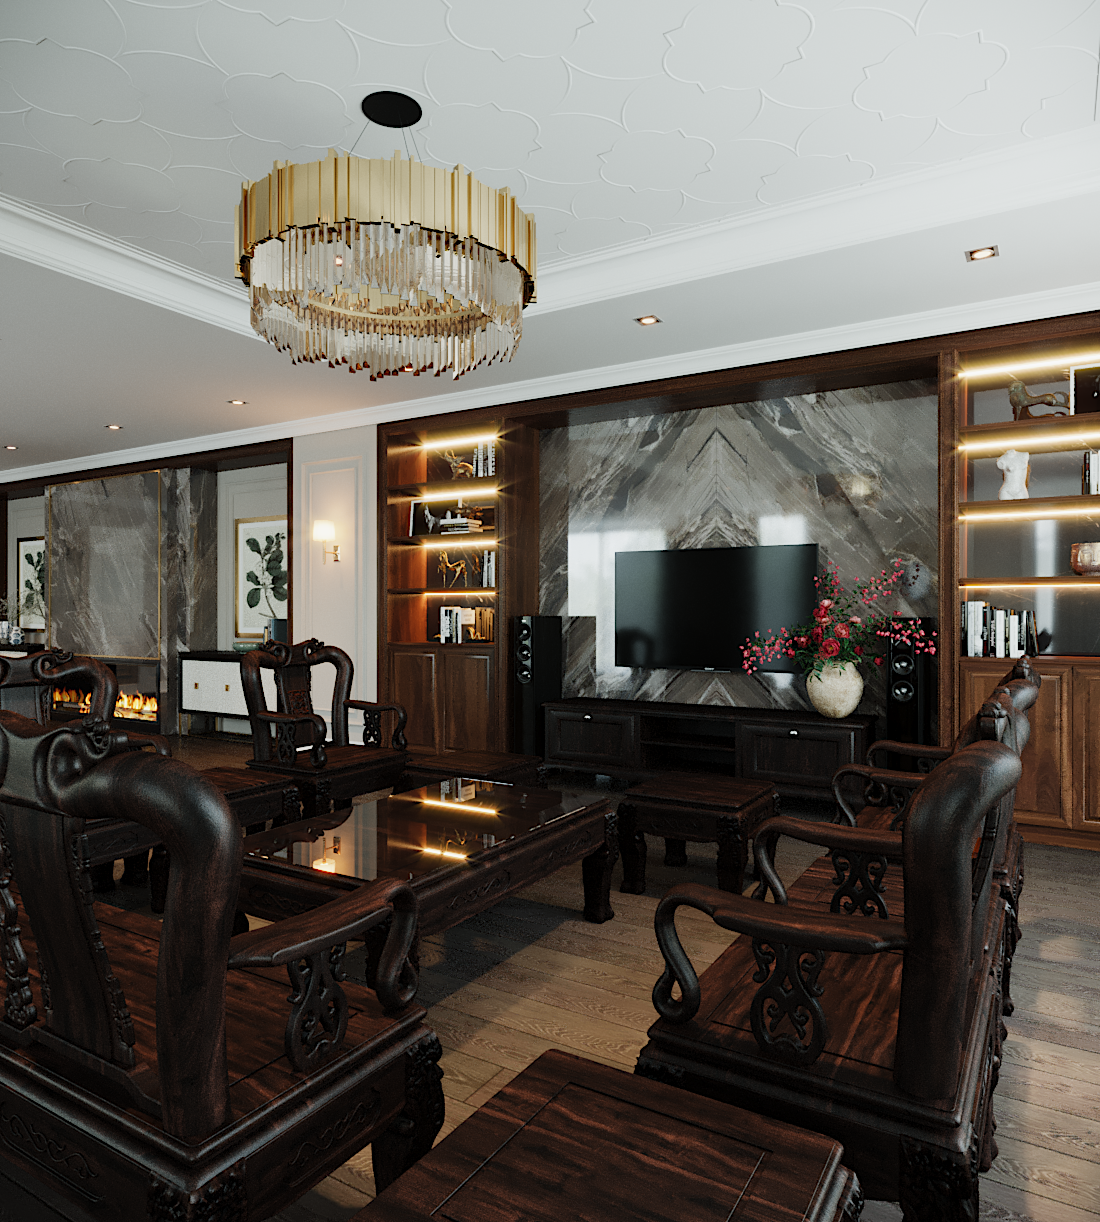 Thiết kế nội thất Biệt Thự tại Hà Nội Biet thu ecopark 1587331058 5